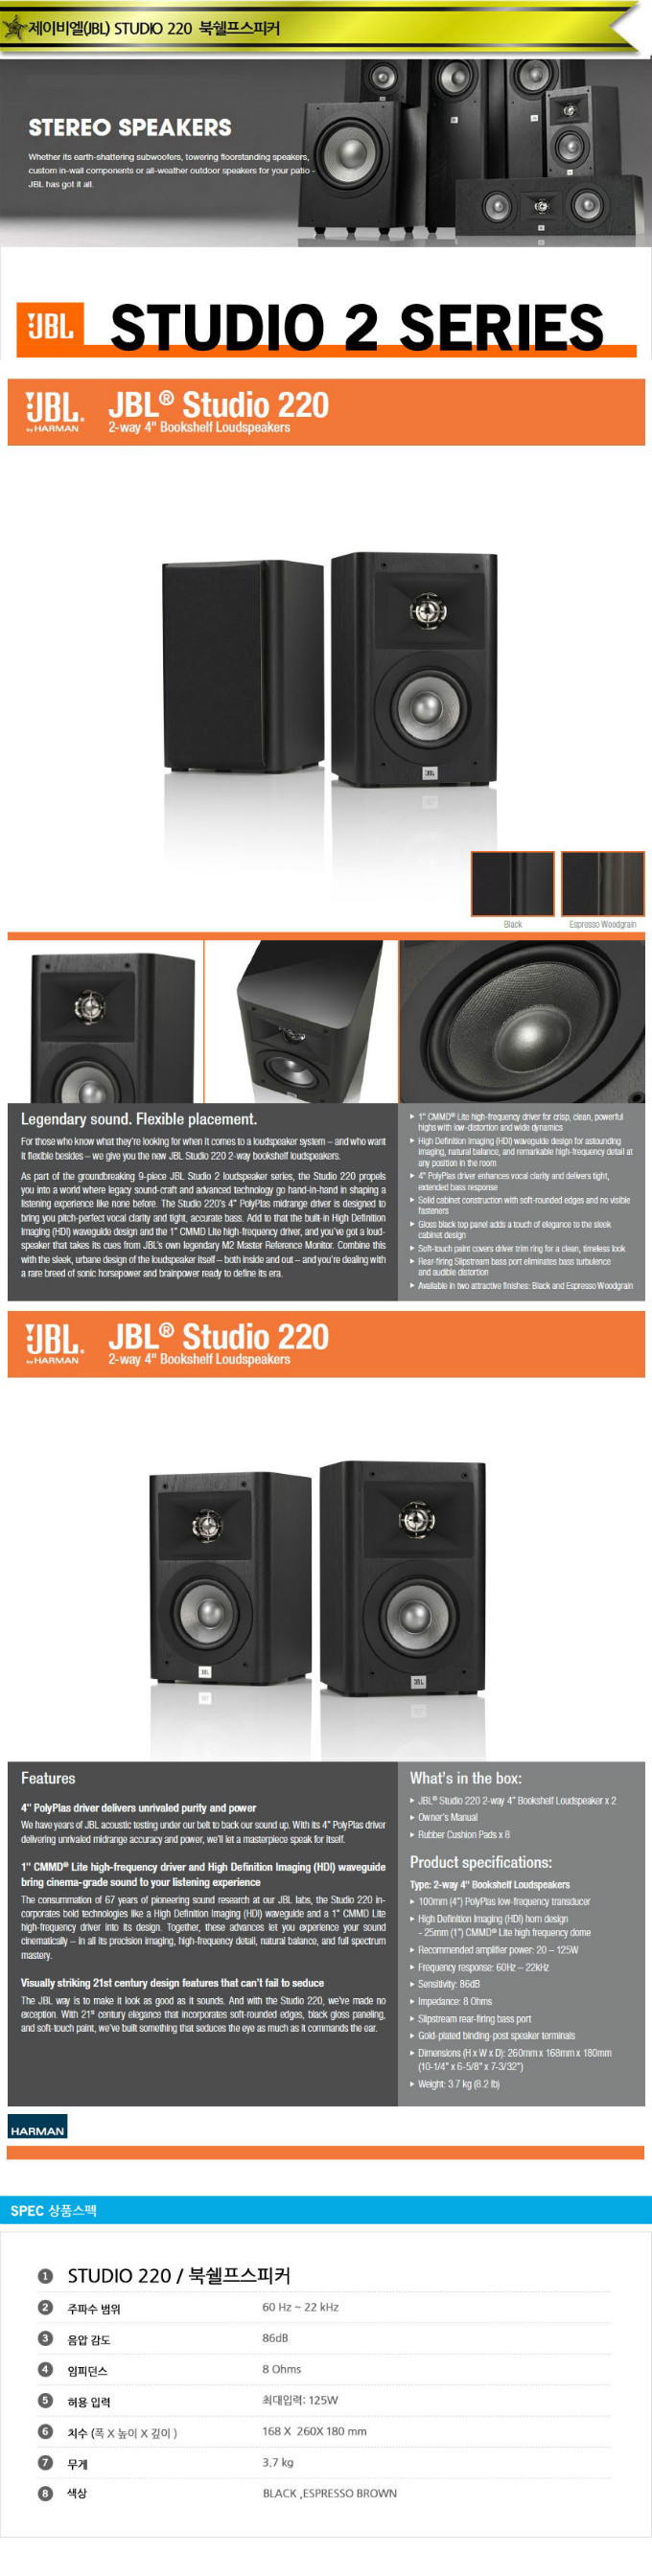 JBL Studio 220 MENU.jpg